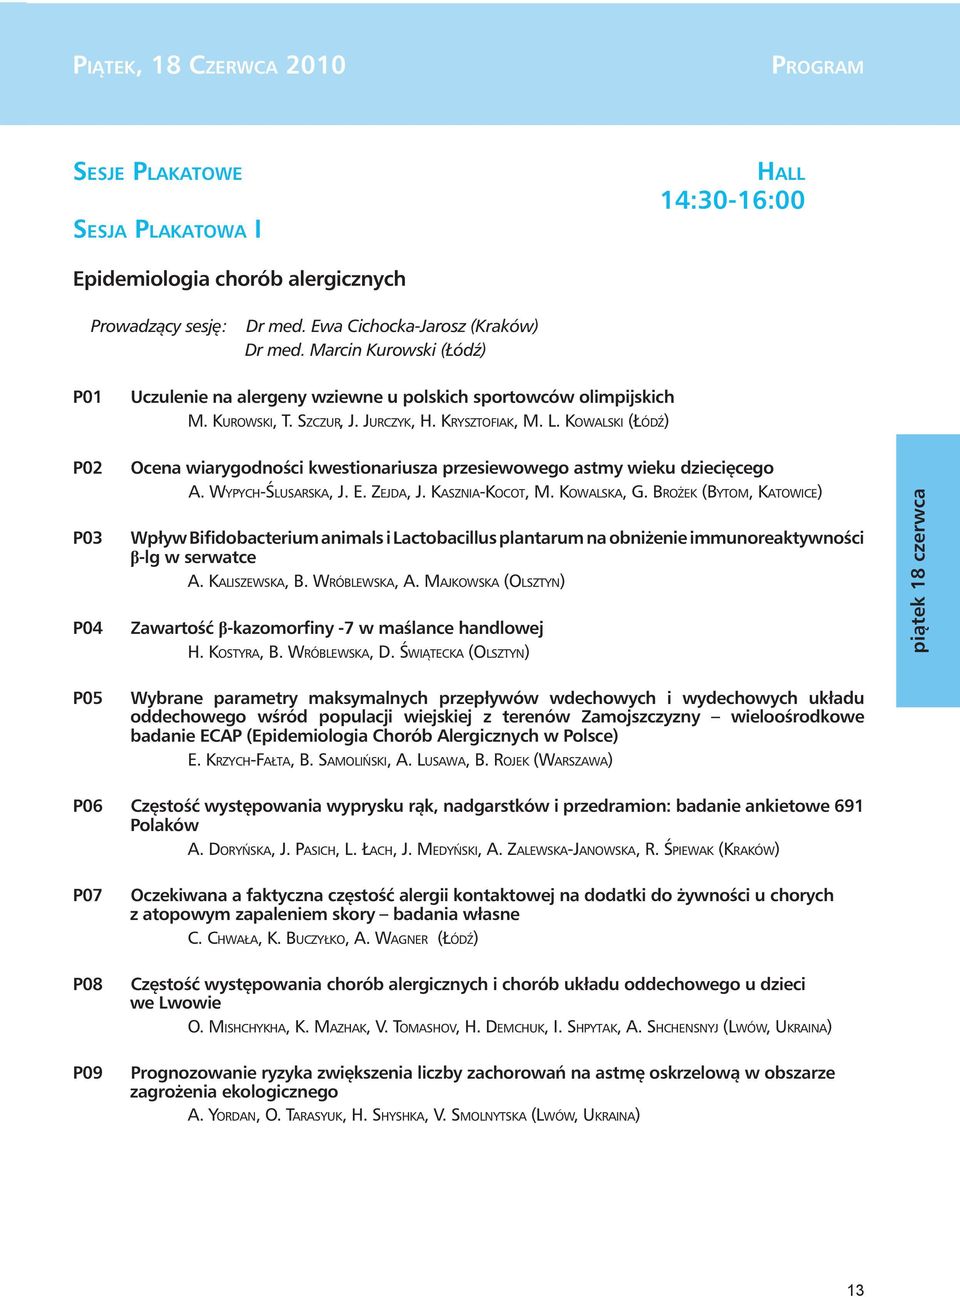 KOWALSKI (ŁÓDŹ) P02 P03 P04 Ocena wiarygodności kwestionariusza przesiewowego astmy wieku dziecięcego A. WYPYCH-ŚLUSARSKA, J. E. ZEJDA, J. KASZNIA-KOCOT, M. KOWALSKA, G.